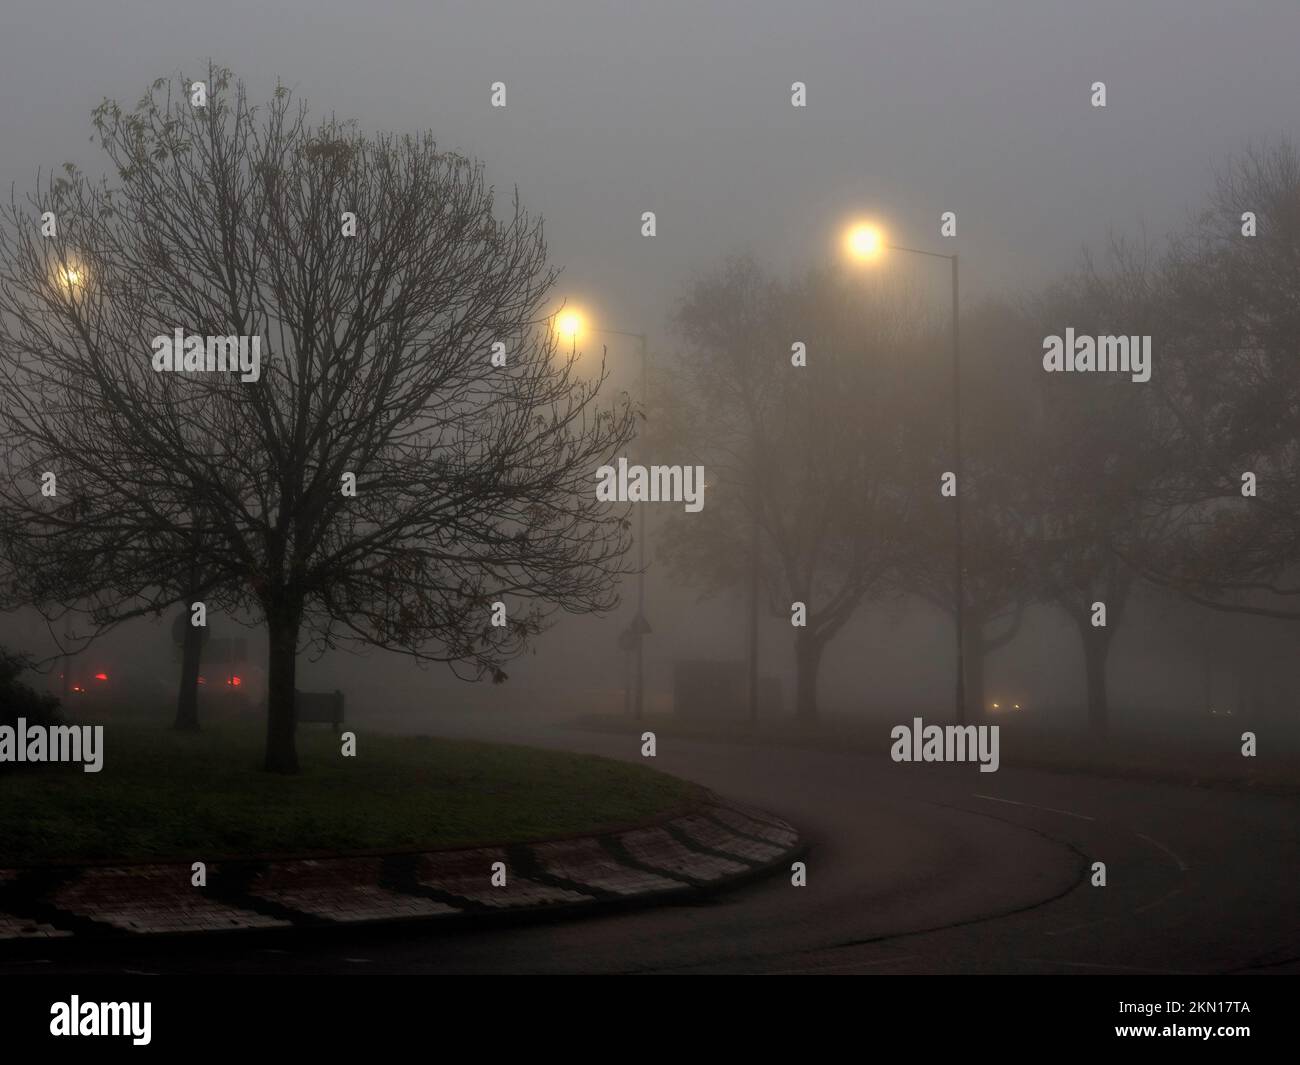 Carretera urbana en una mañana de niebla con árboles de invierno y farolas Foto de stock